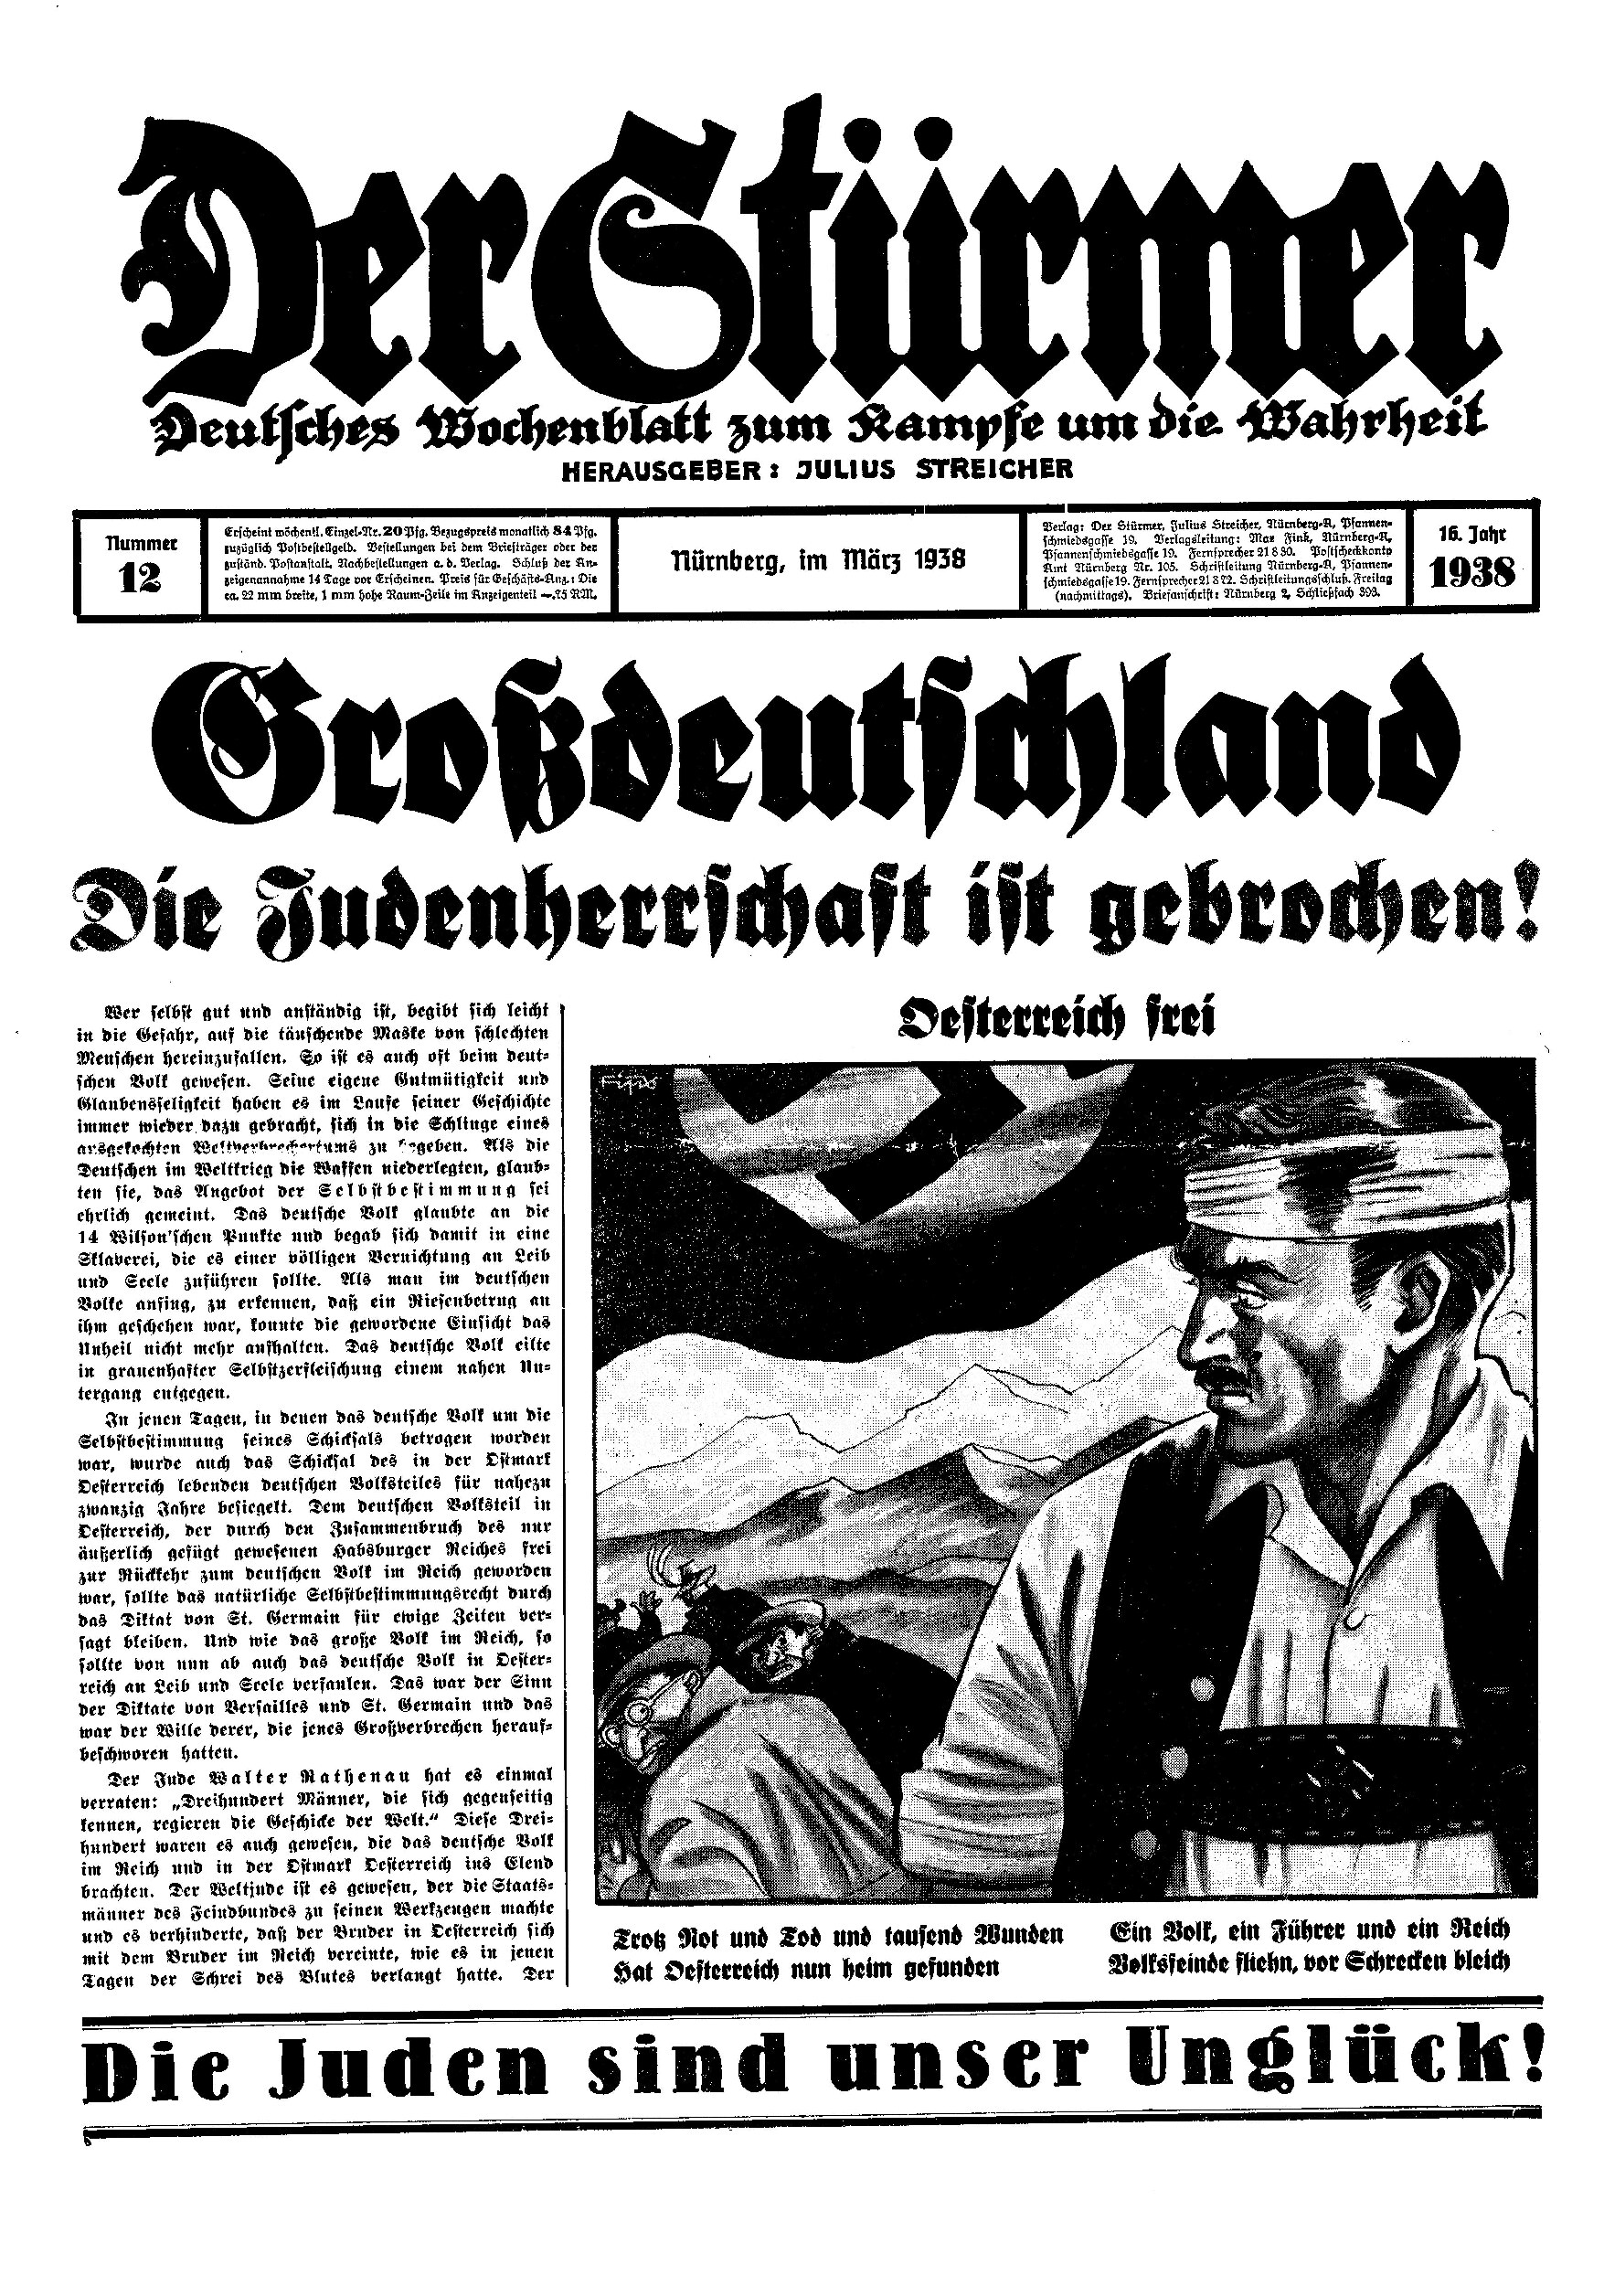 Der Stürmer - 1938 Nr. 12 - Großdeutschland